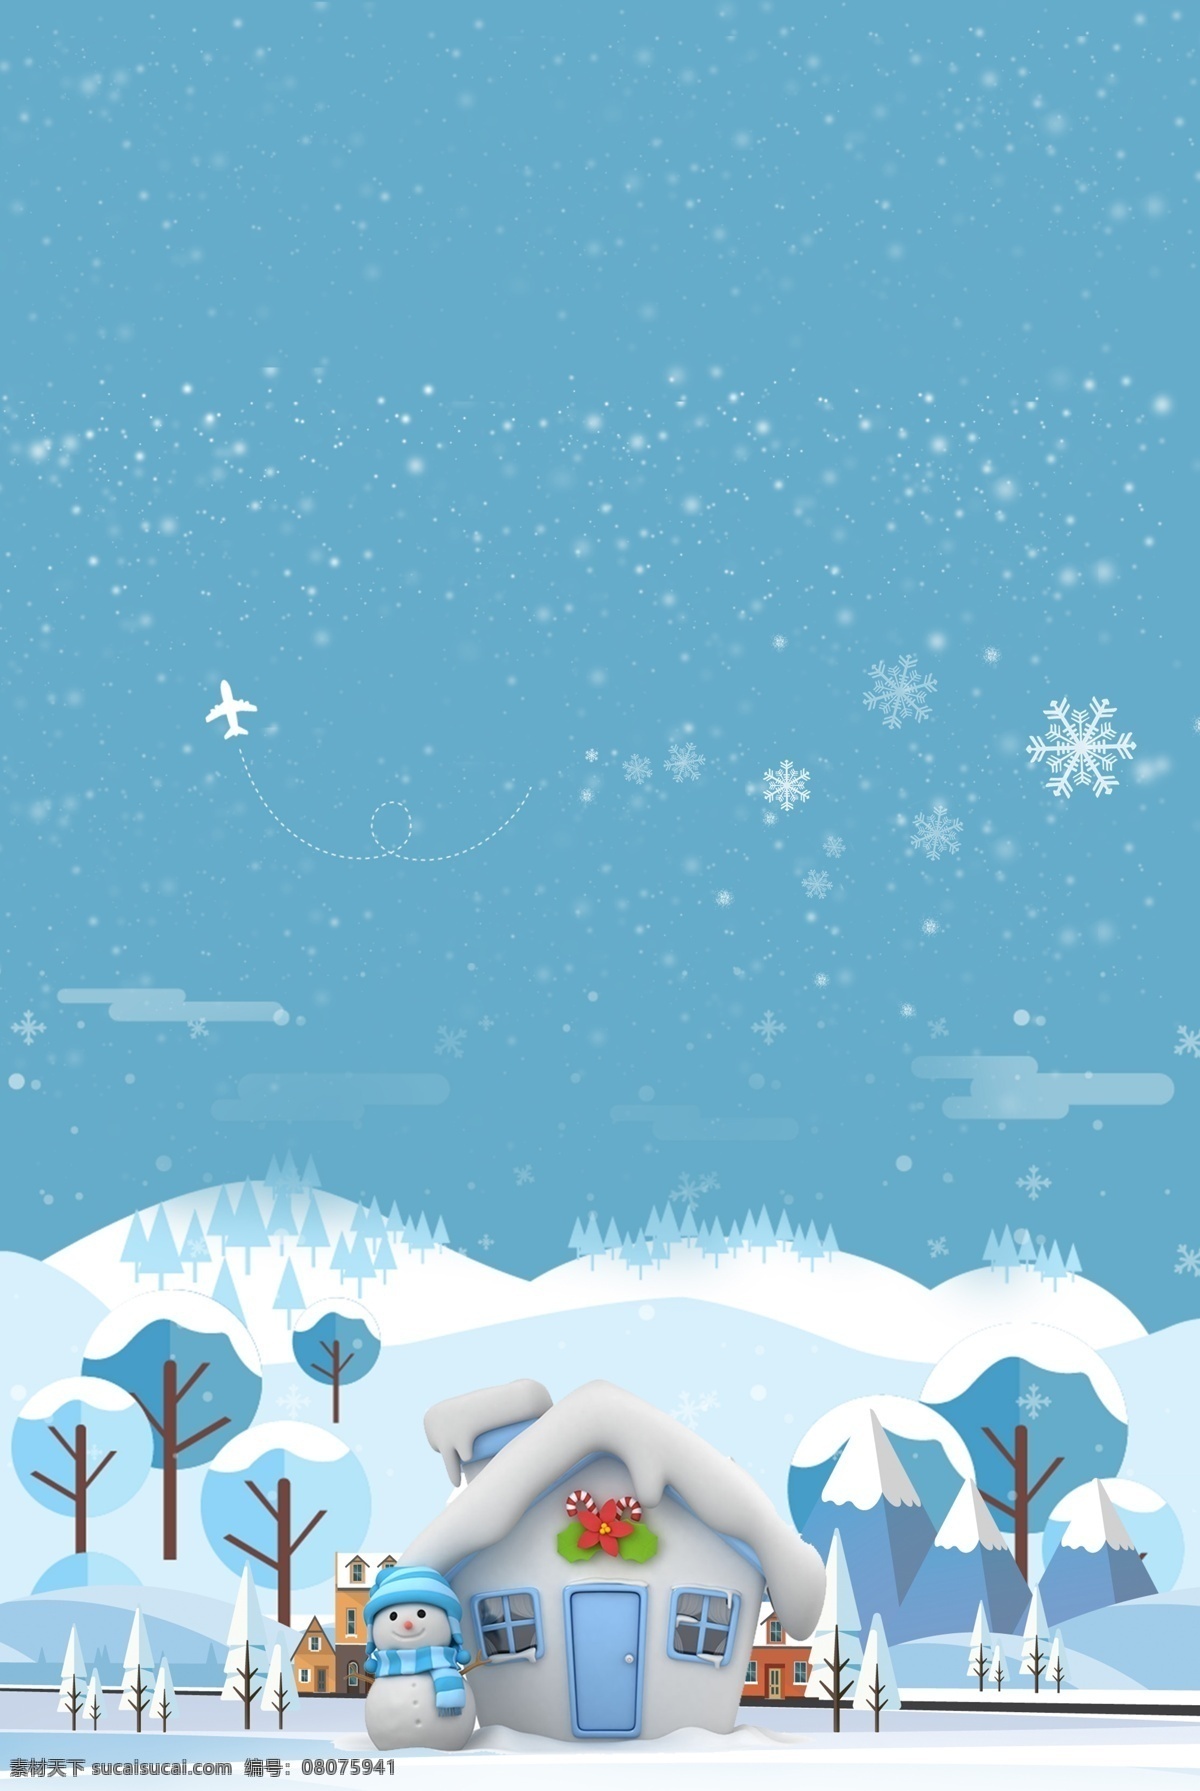 彩绘 冬天 大雪 节气 背景 图 蓝色 圣诞背景 雪景 冬季海报 大雪背景 大雪海报 传统节气 冬至 冬季大雪 彩绘背景 大寒节气